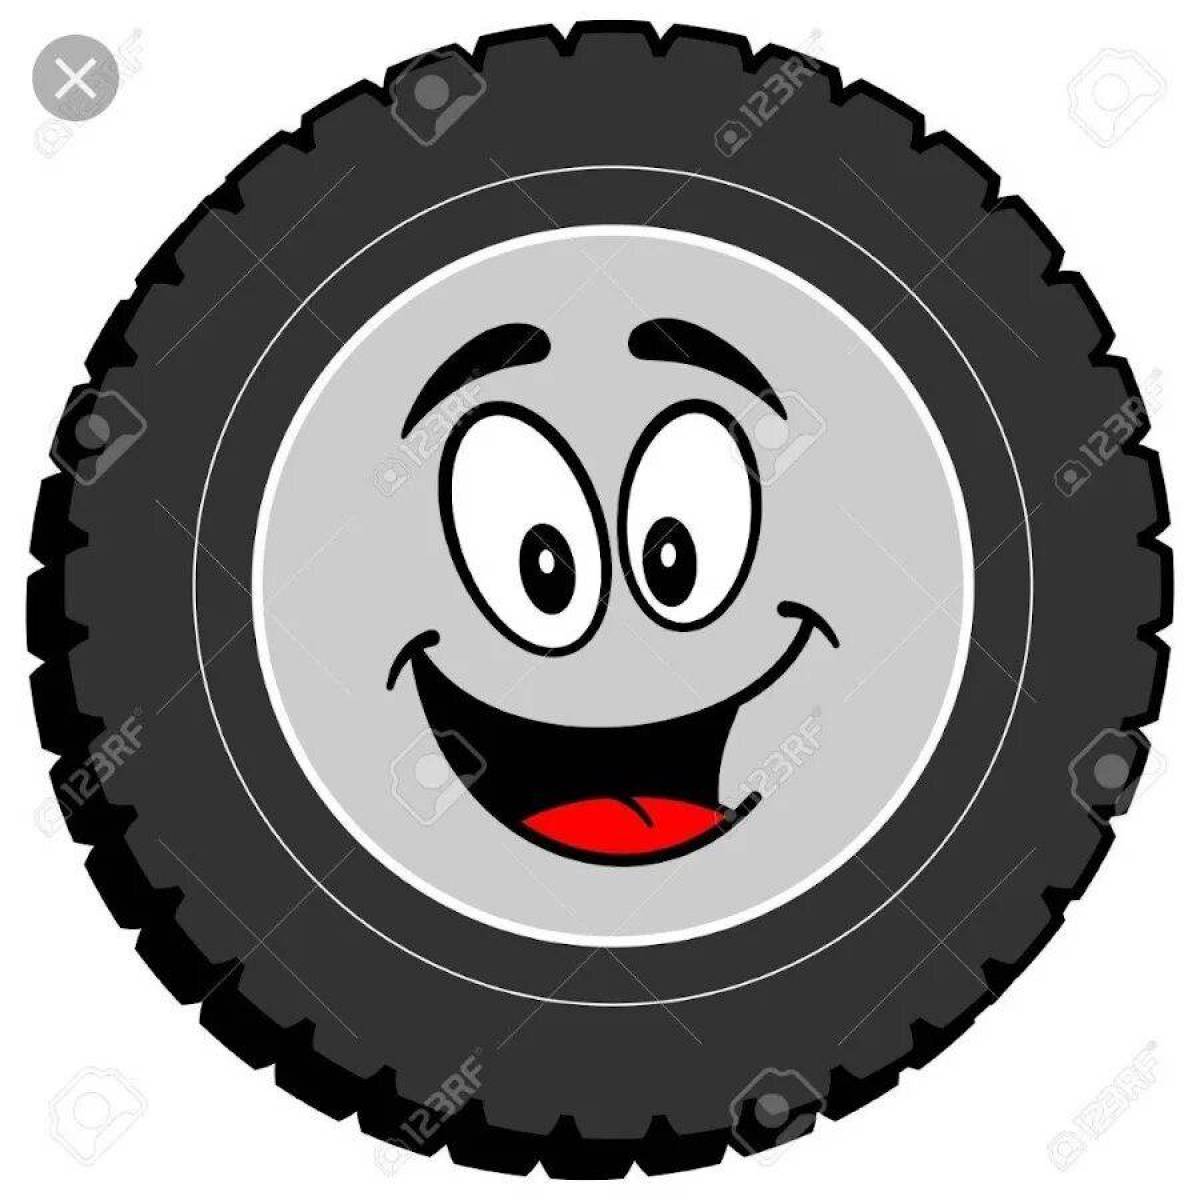 Веселые колеса 6. Шины мультяшные. Колесо от машины мультяшное. Изображение колеса для детей. Рисунок колеса автомобиля.